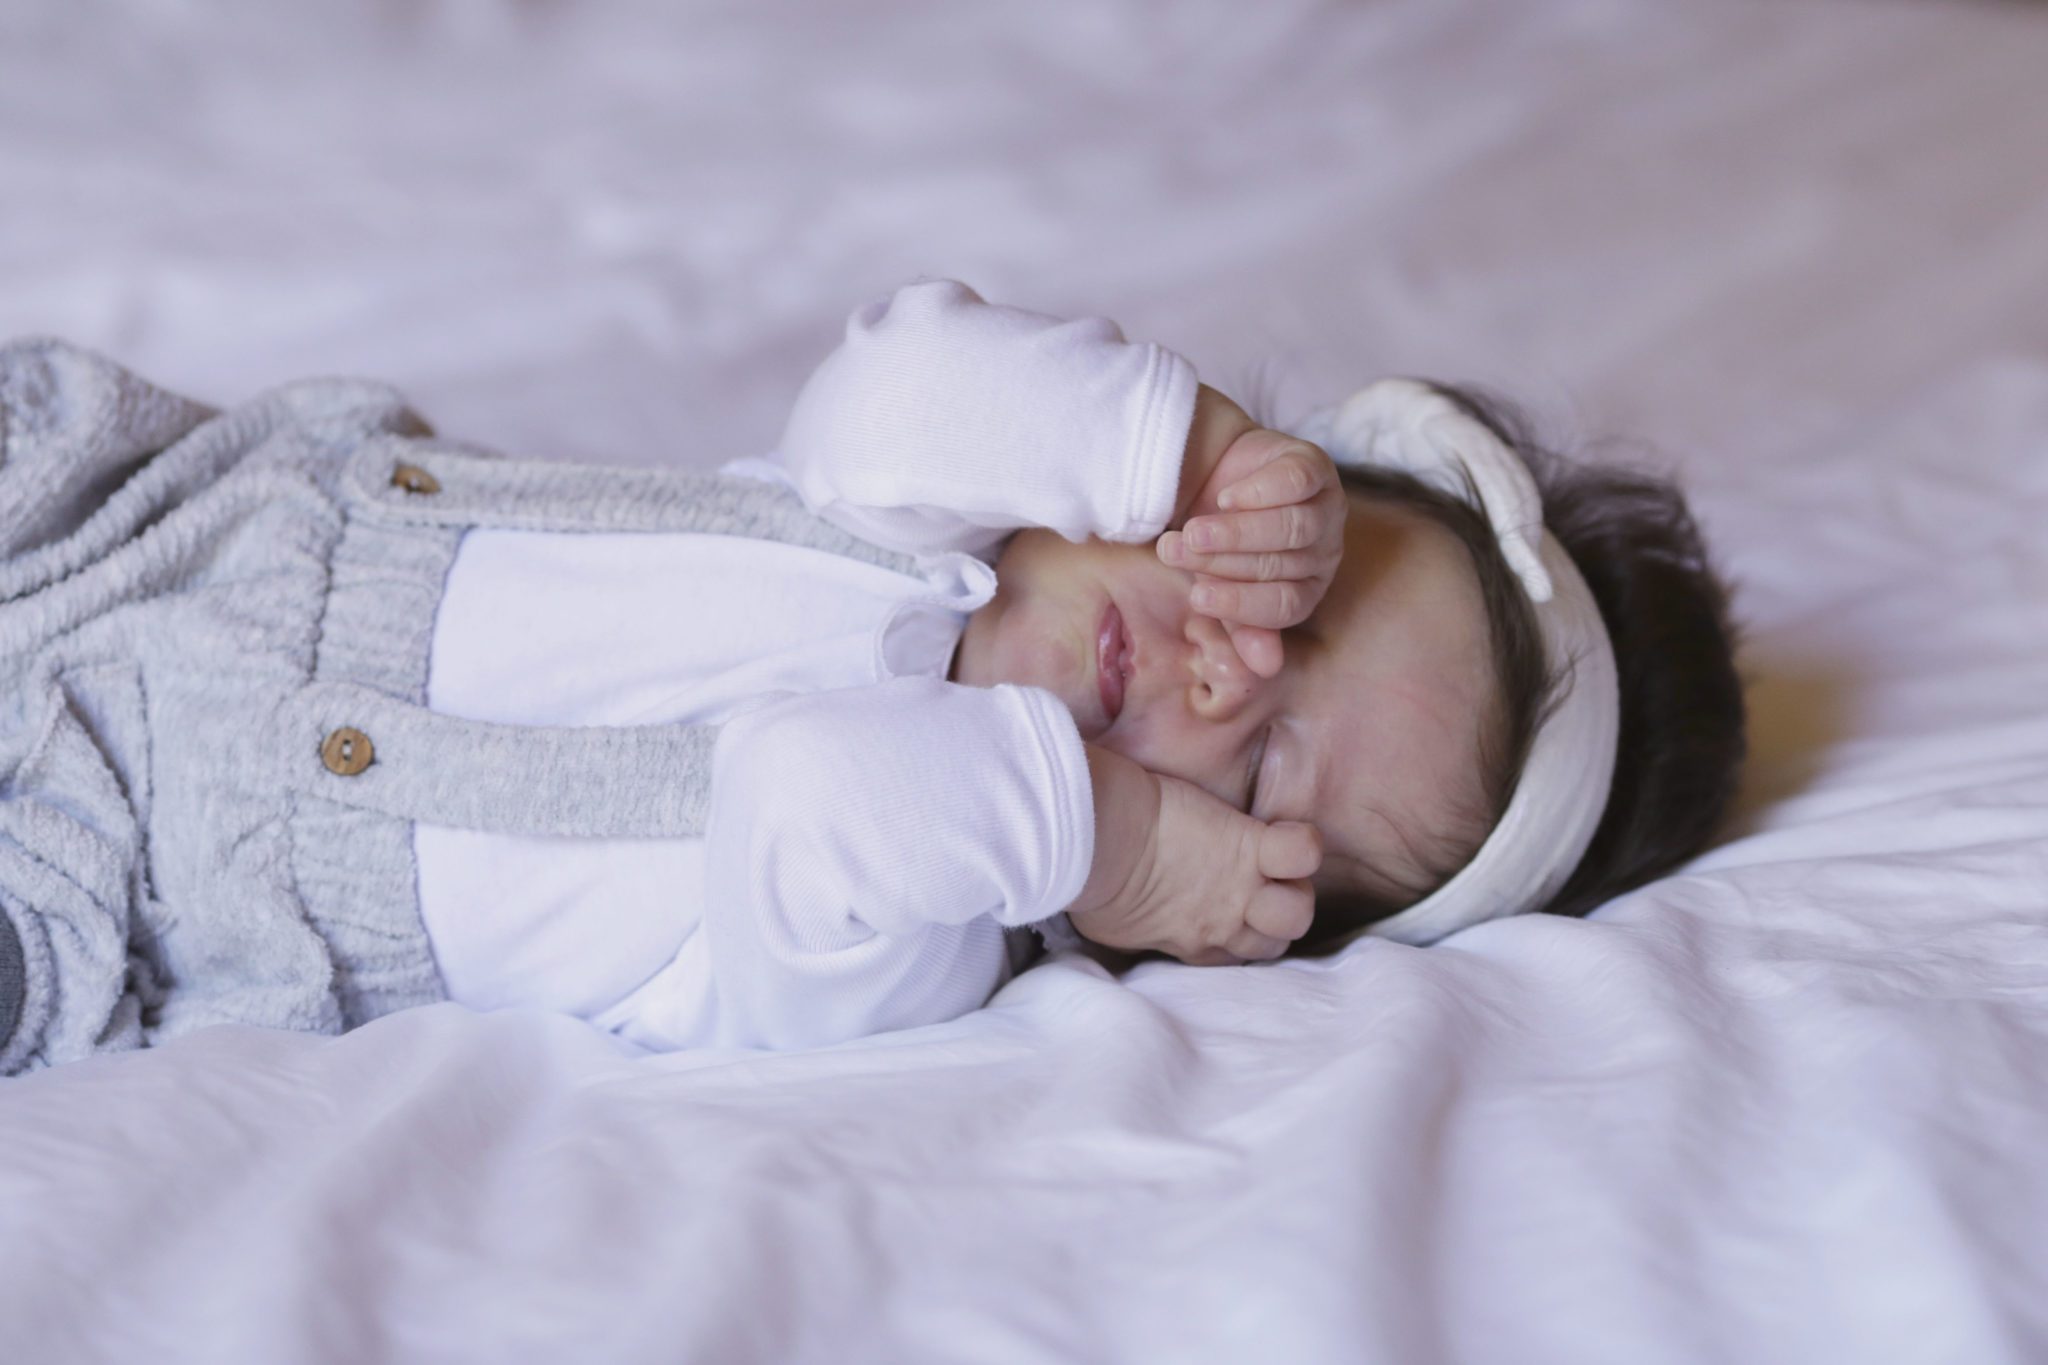 Bébé a 2 mois : éveil, développement, santé, alimentation